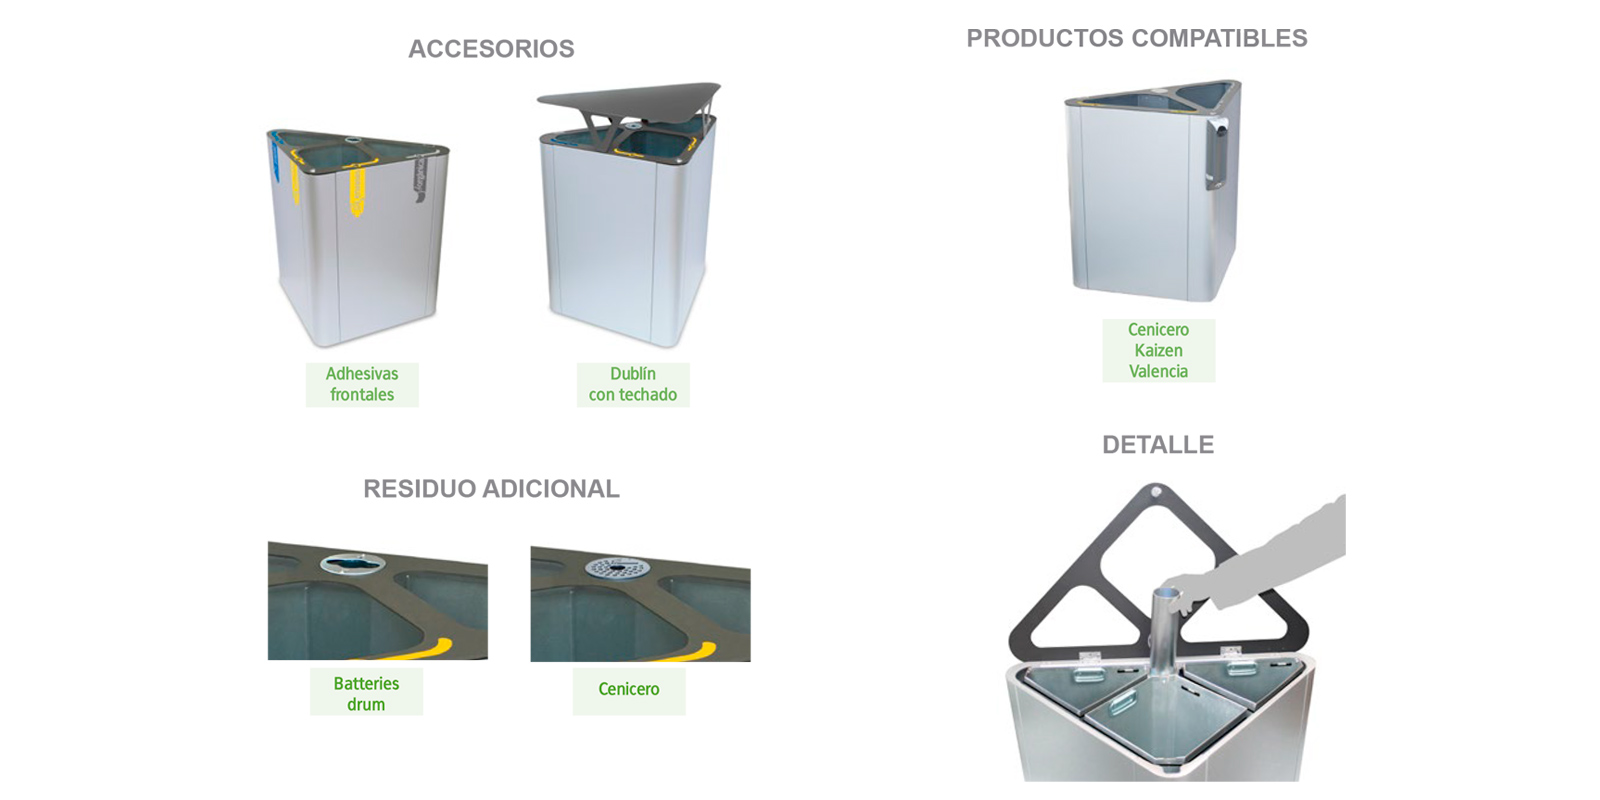 accesorios y productos compatibles de estacion de reciclaje